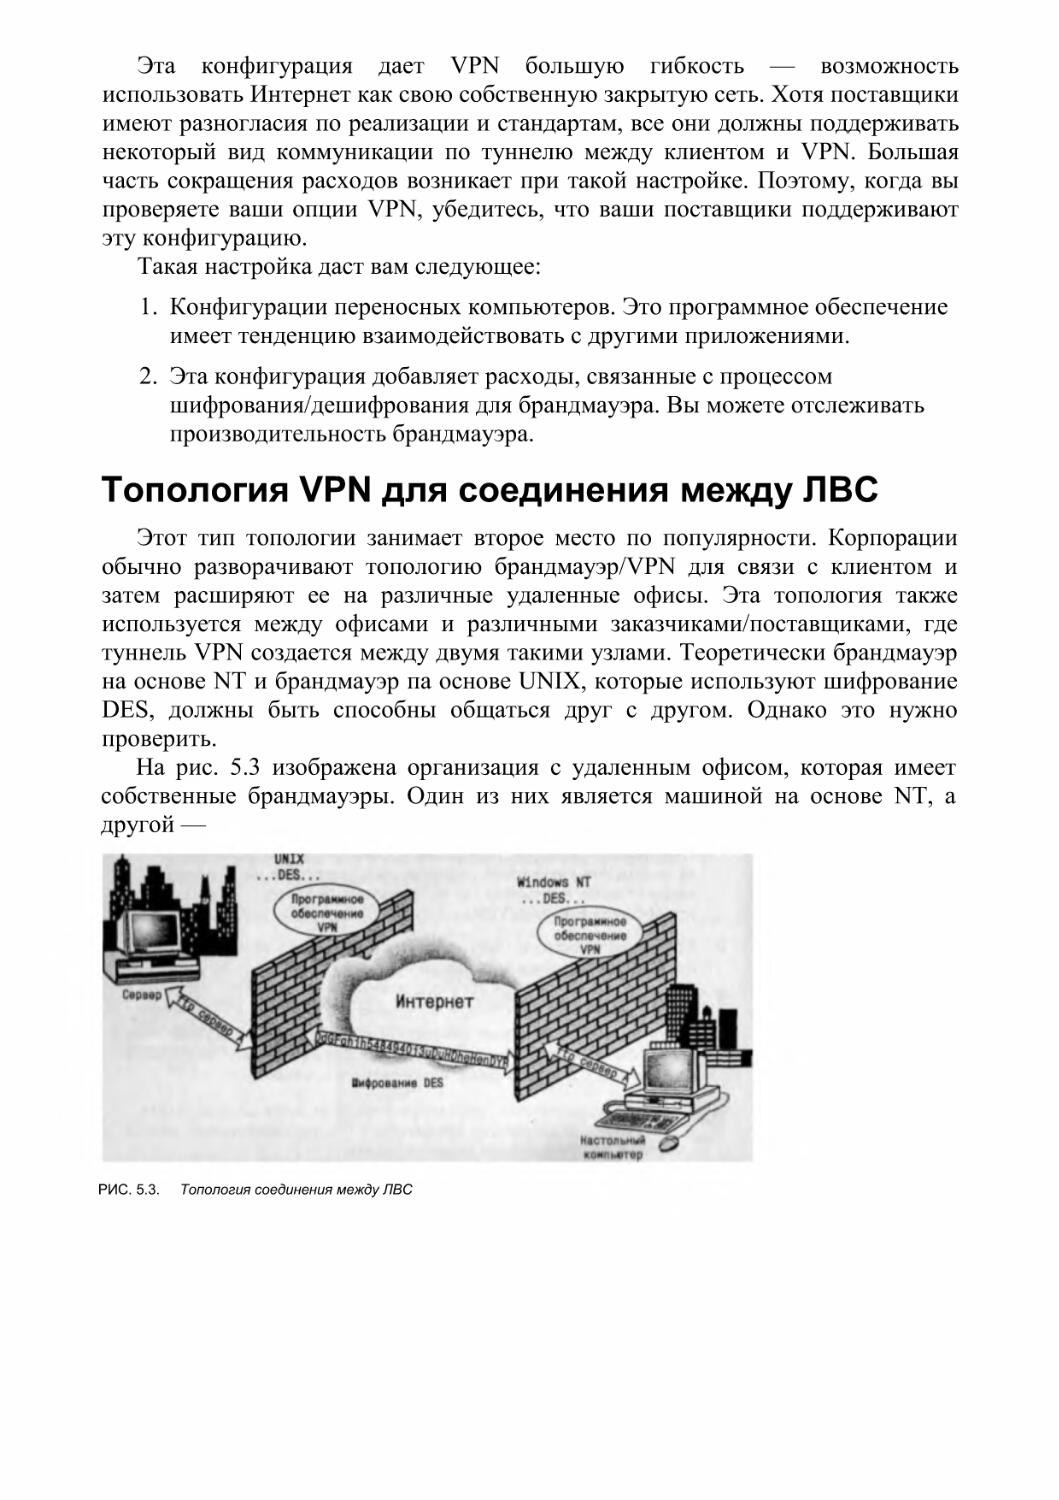 Топология VPN для соединения между ЛВС